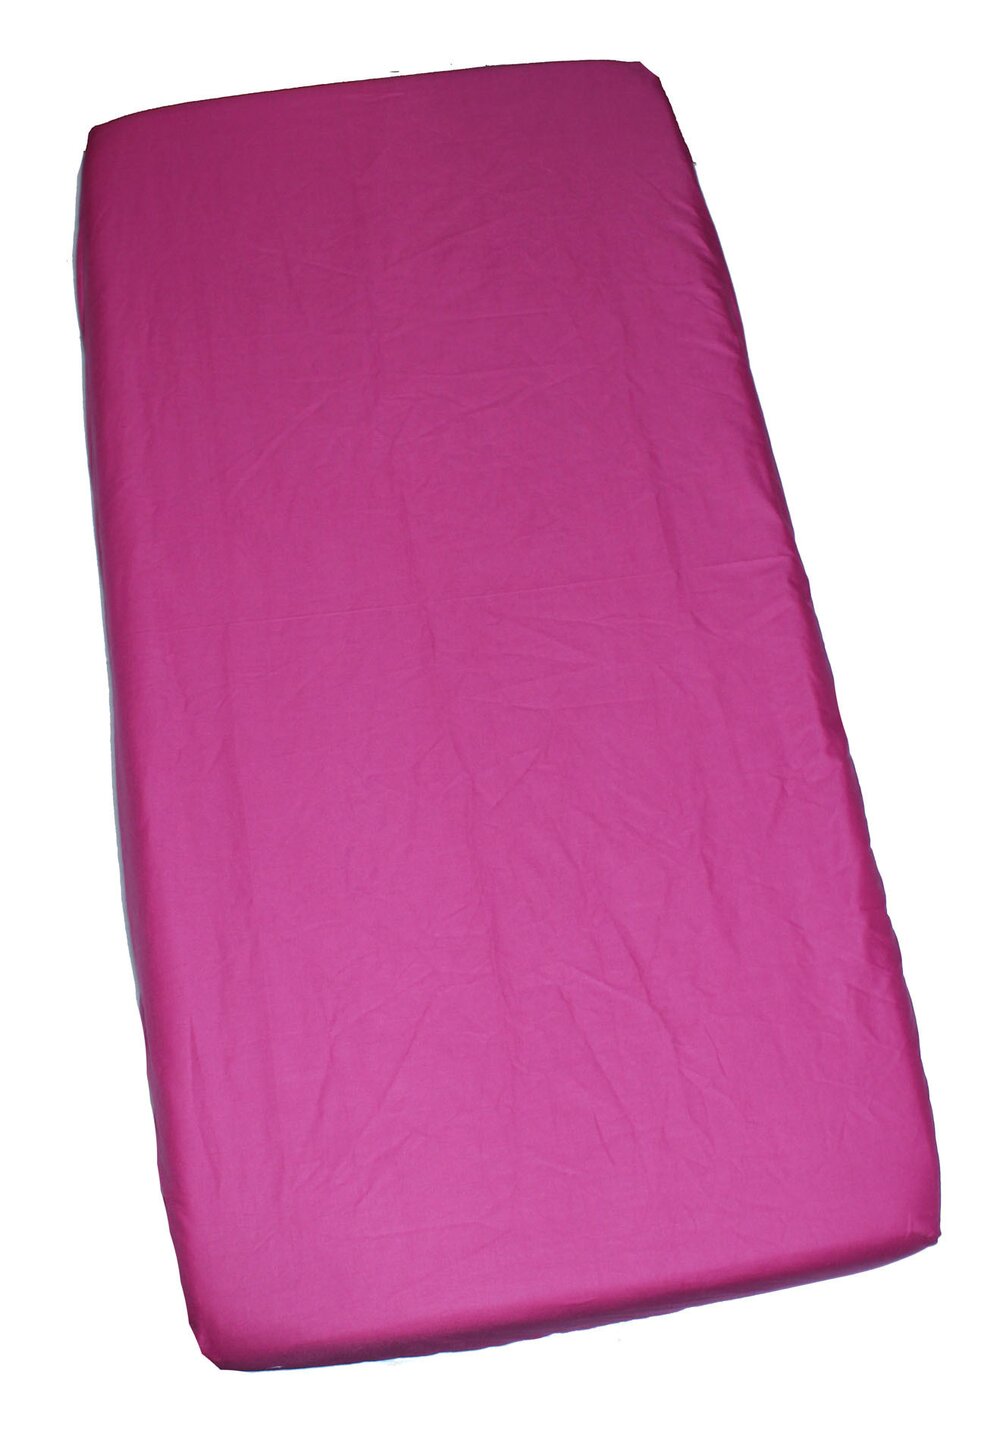 Cearceaf Prichindel, patut 120×60 cm, roz inchis 120x60